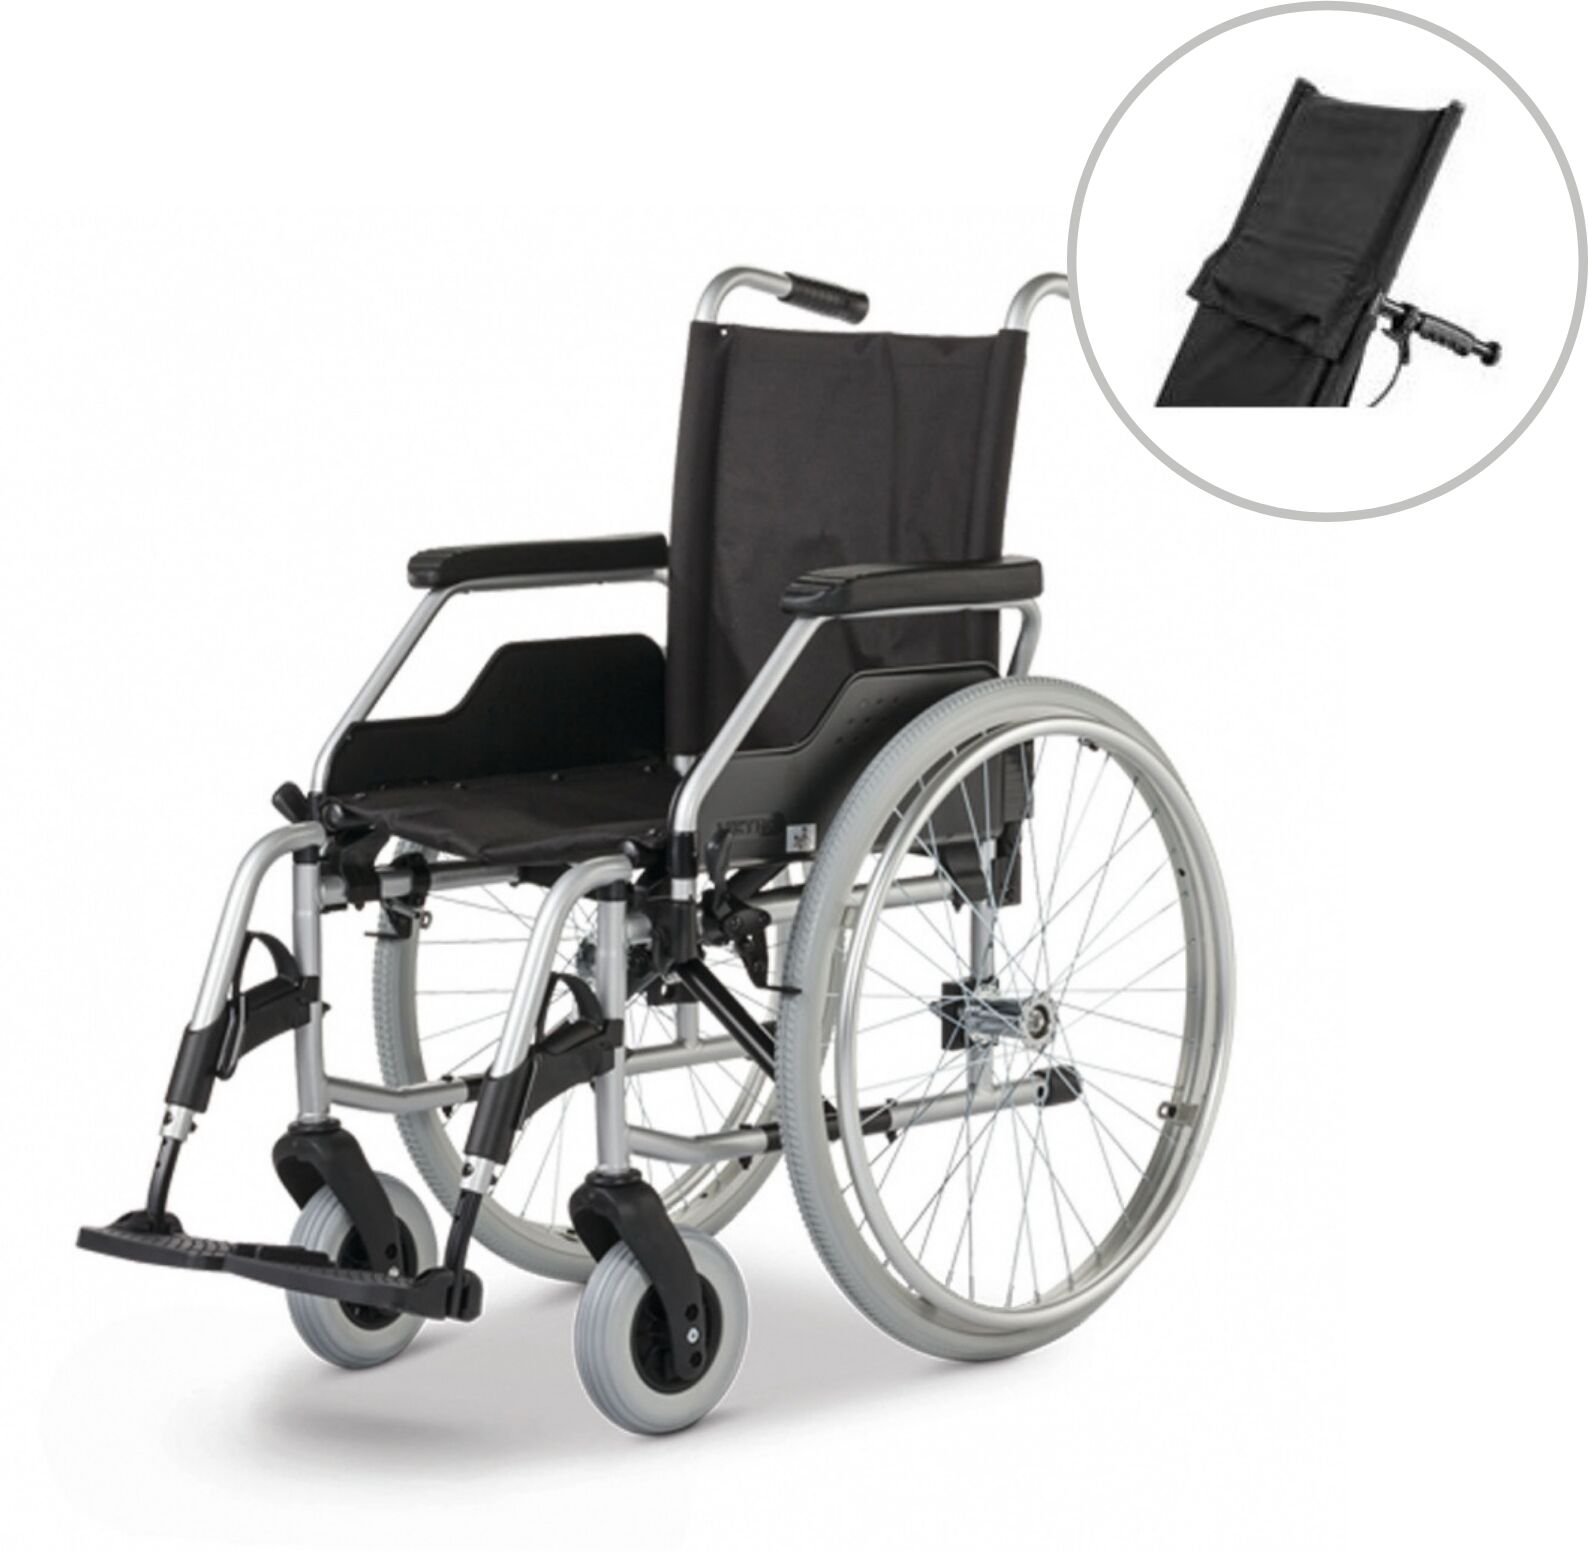 Meyra Wózek inwalidzki ze składaną ramą krzyżakową, uchylnymi podnóżkami i przedłużeniem oparcia BUDGET STAB)